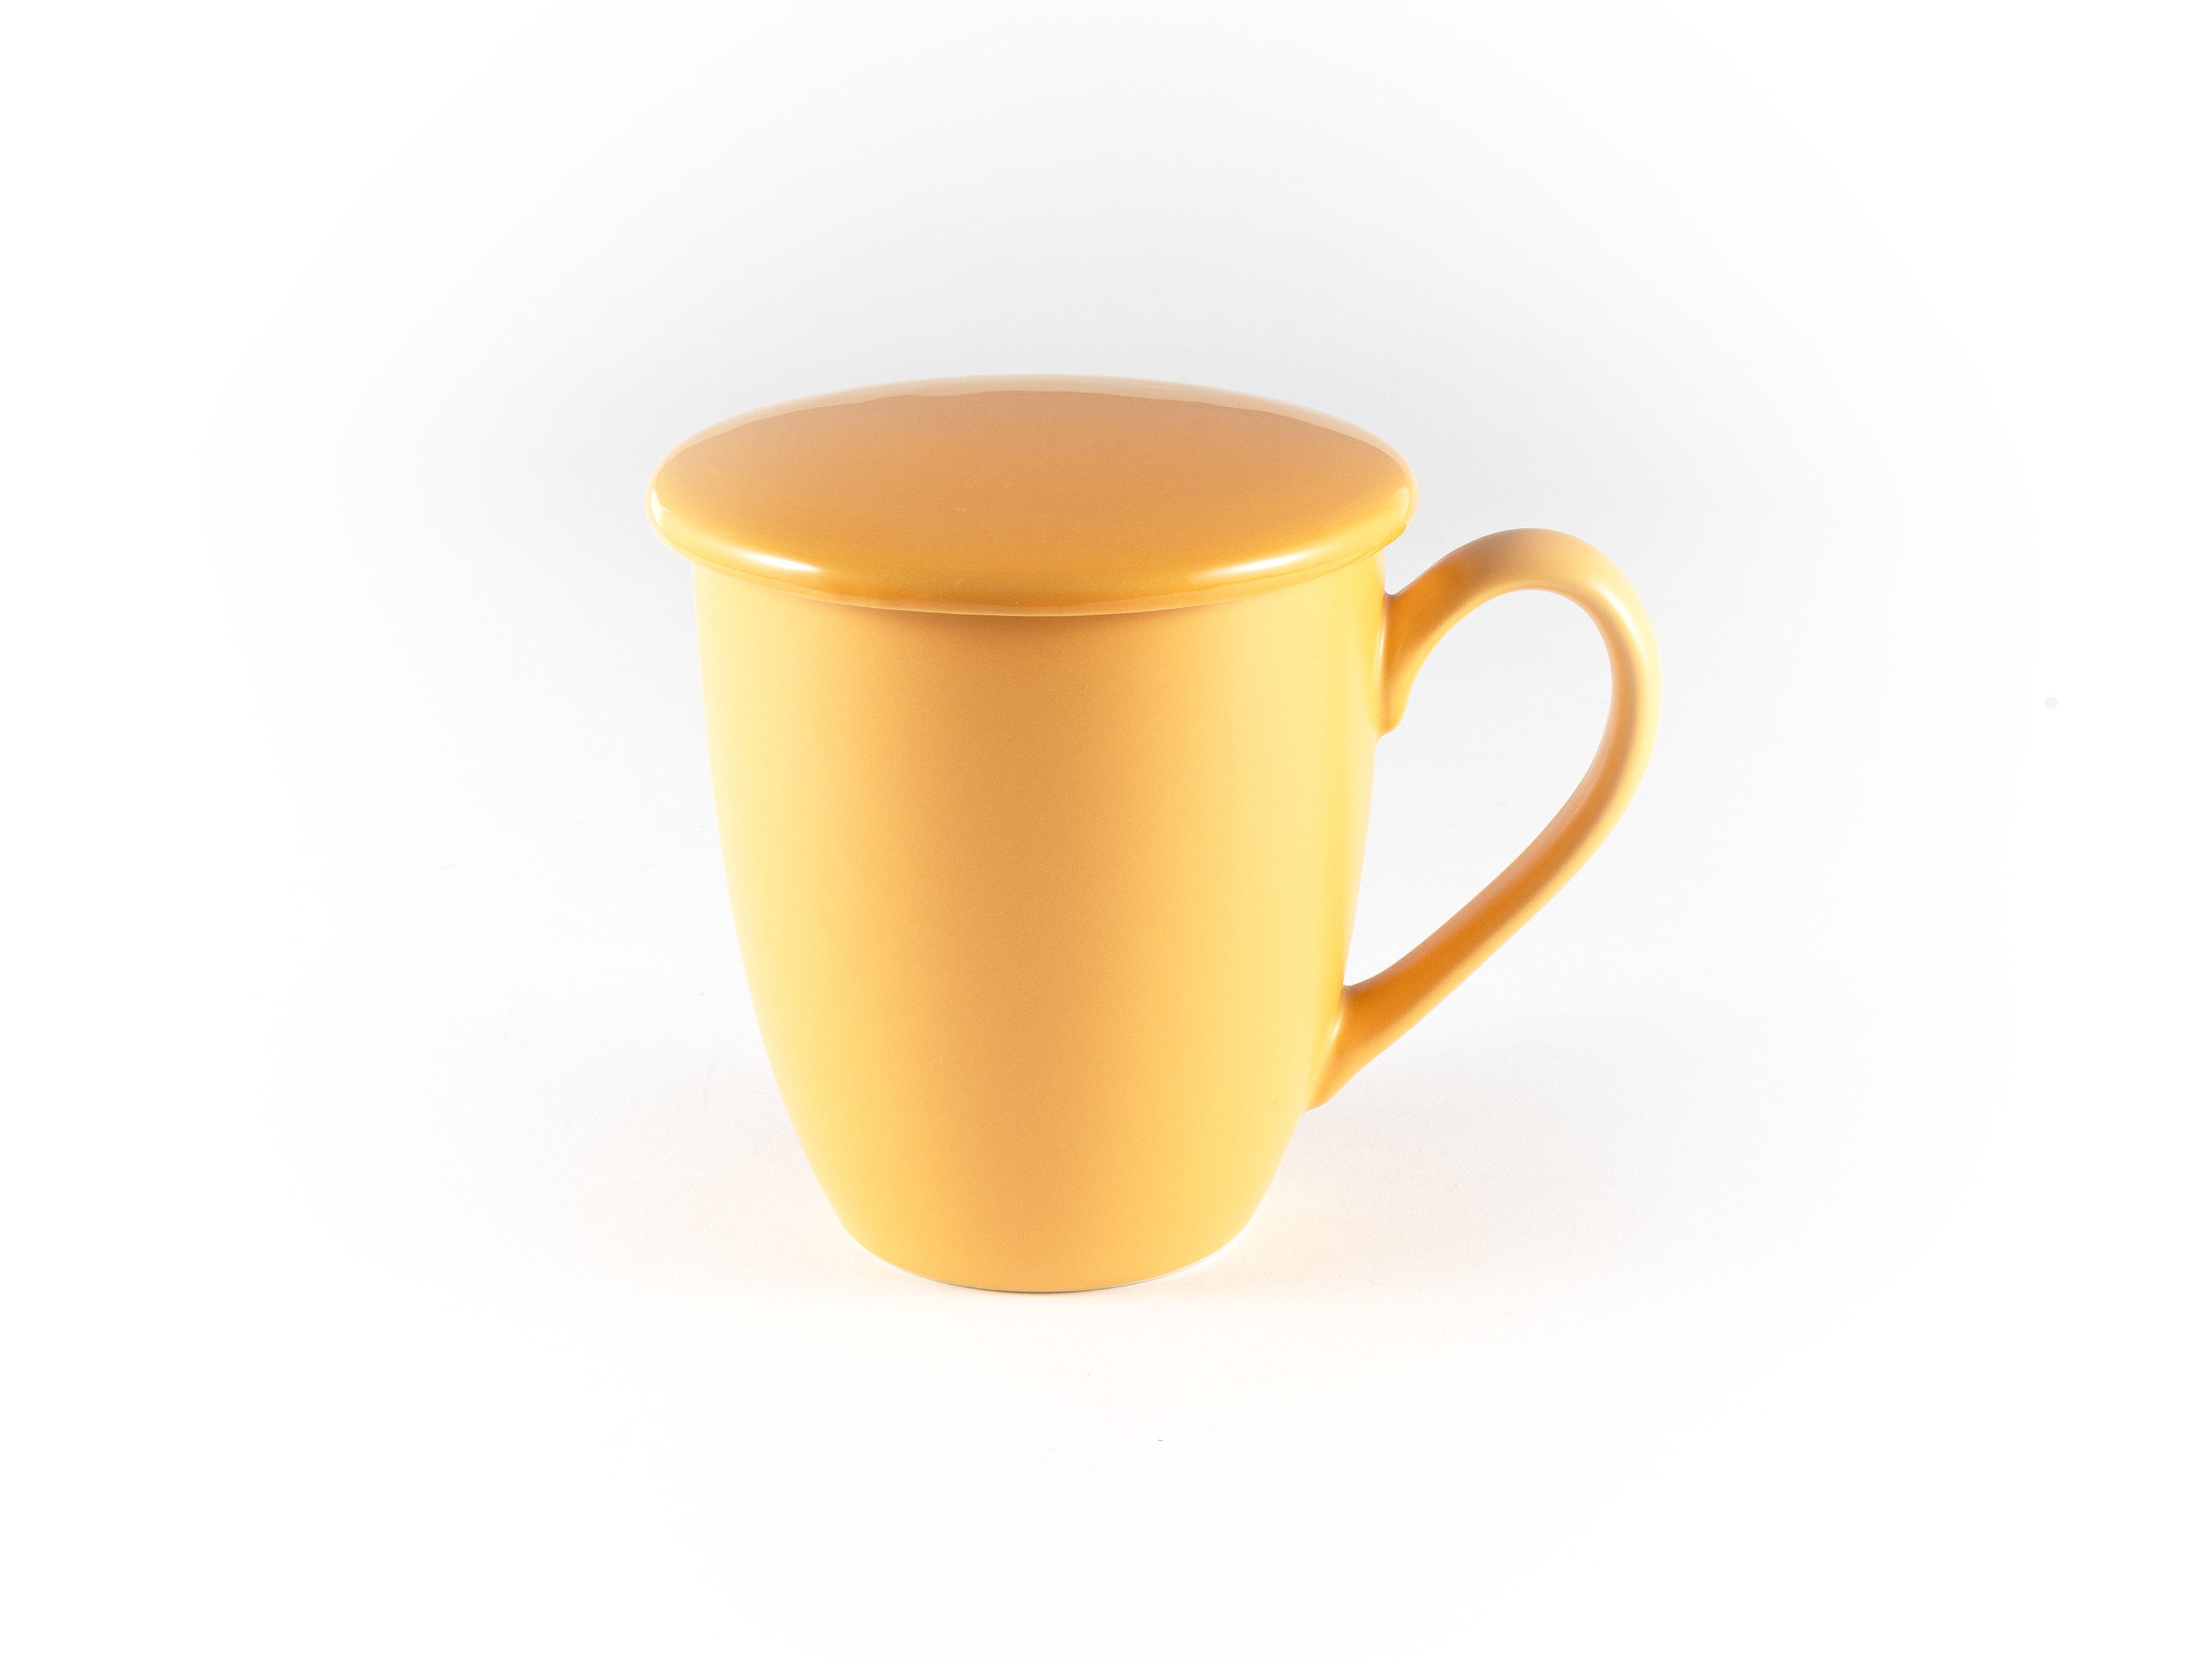 Hanseküche Tasse Teetasse mit Deckel Teebecher mit – und Orange Dickwandige 650ml, Keramik, Ultrafeinfilter, Thermoeffekt, Keramik Sieb XXL